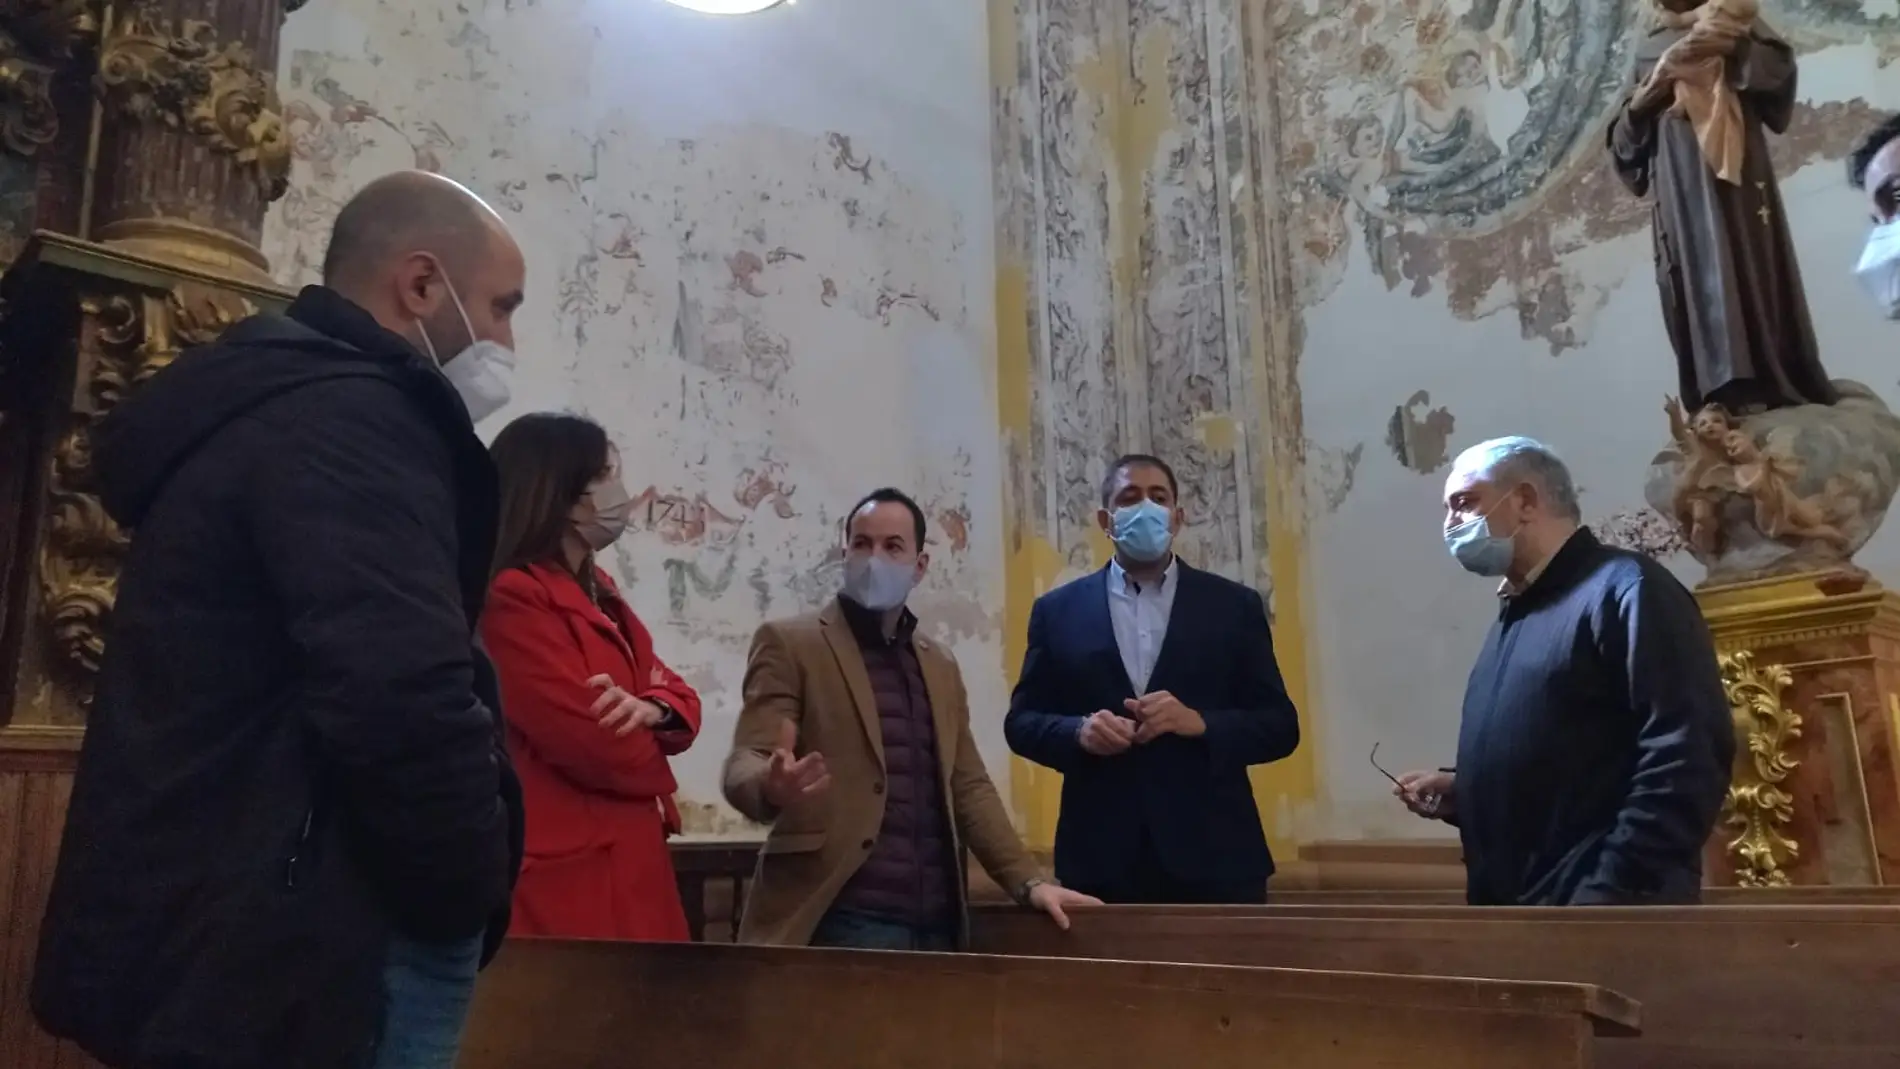 El Ayuntamiento de Herencia restaurará las pinturas barrocas halladas en la Parroquia Inmaculada Concepción